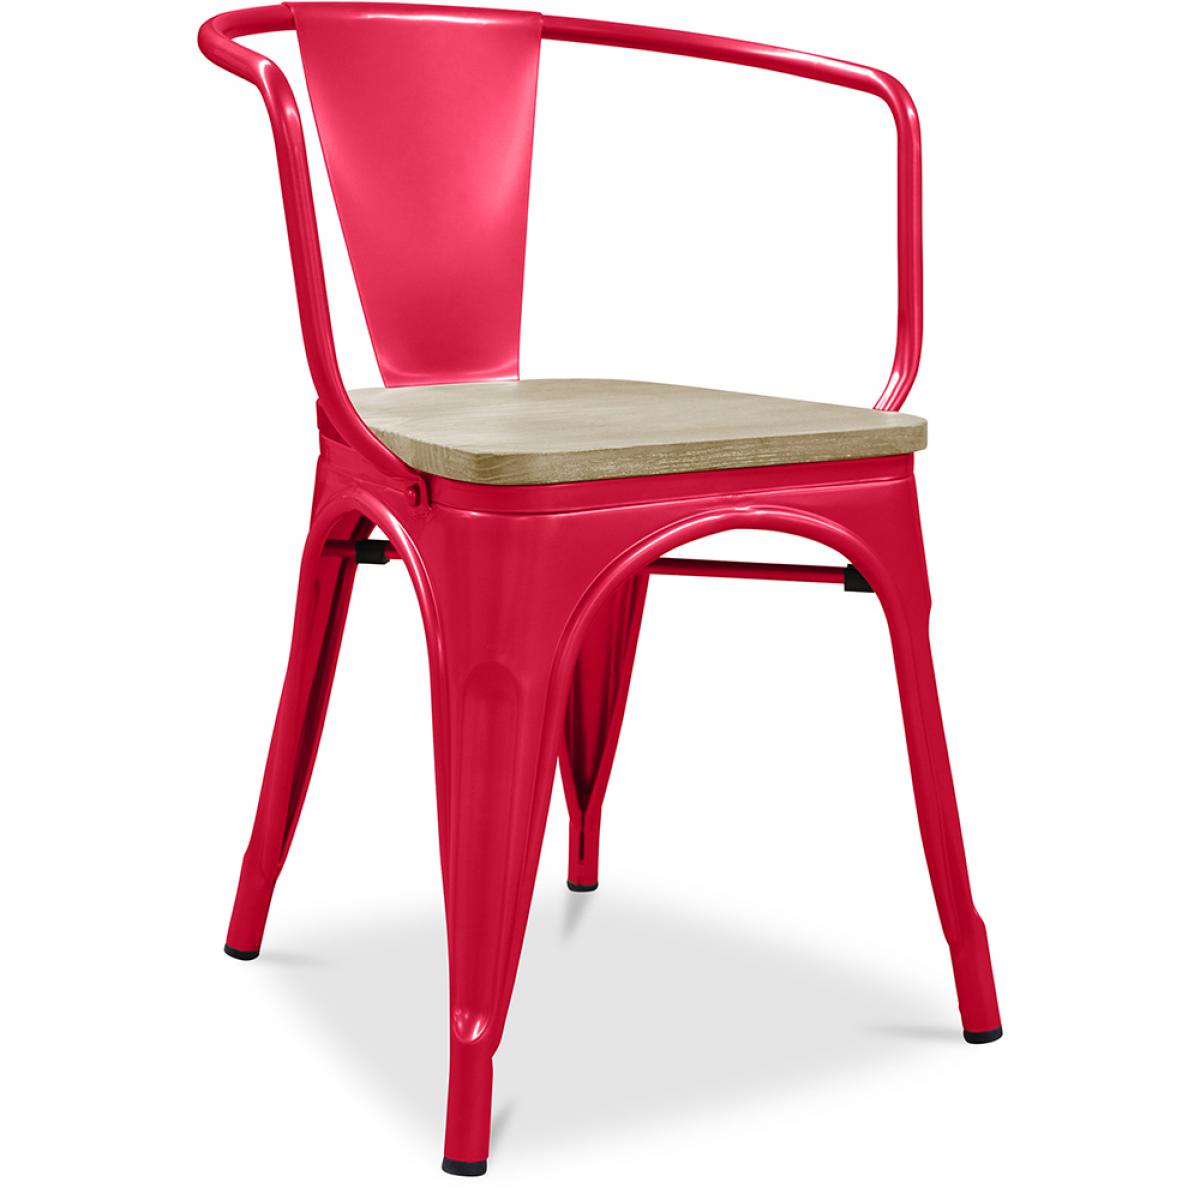 Privatefloor - Chaise avec accoudoir style Tolix - Métal et bois clair - Chaises